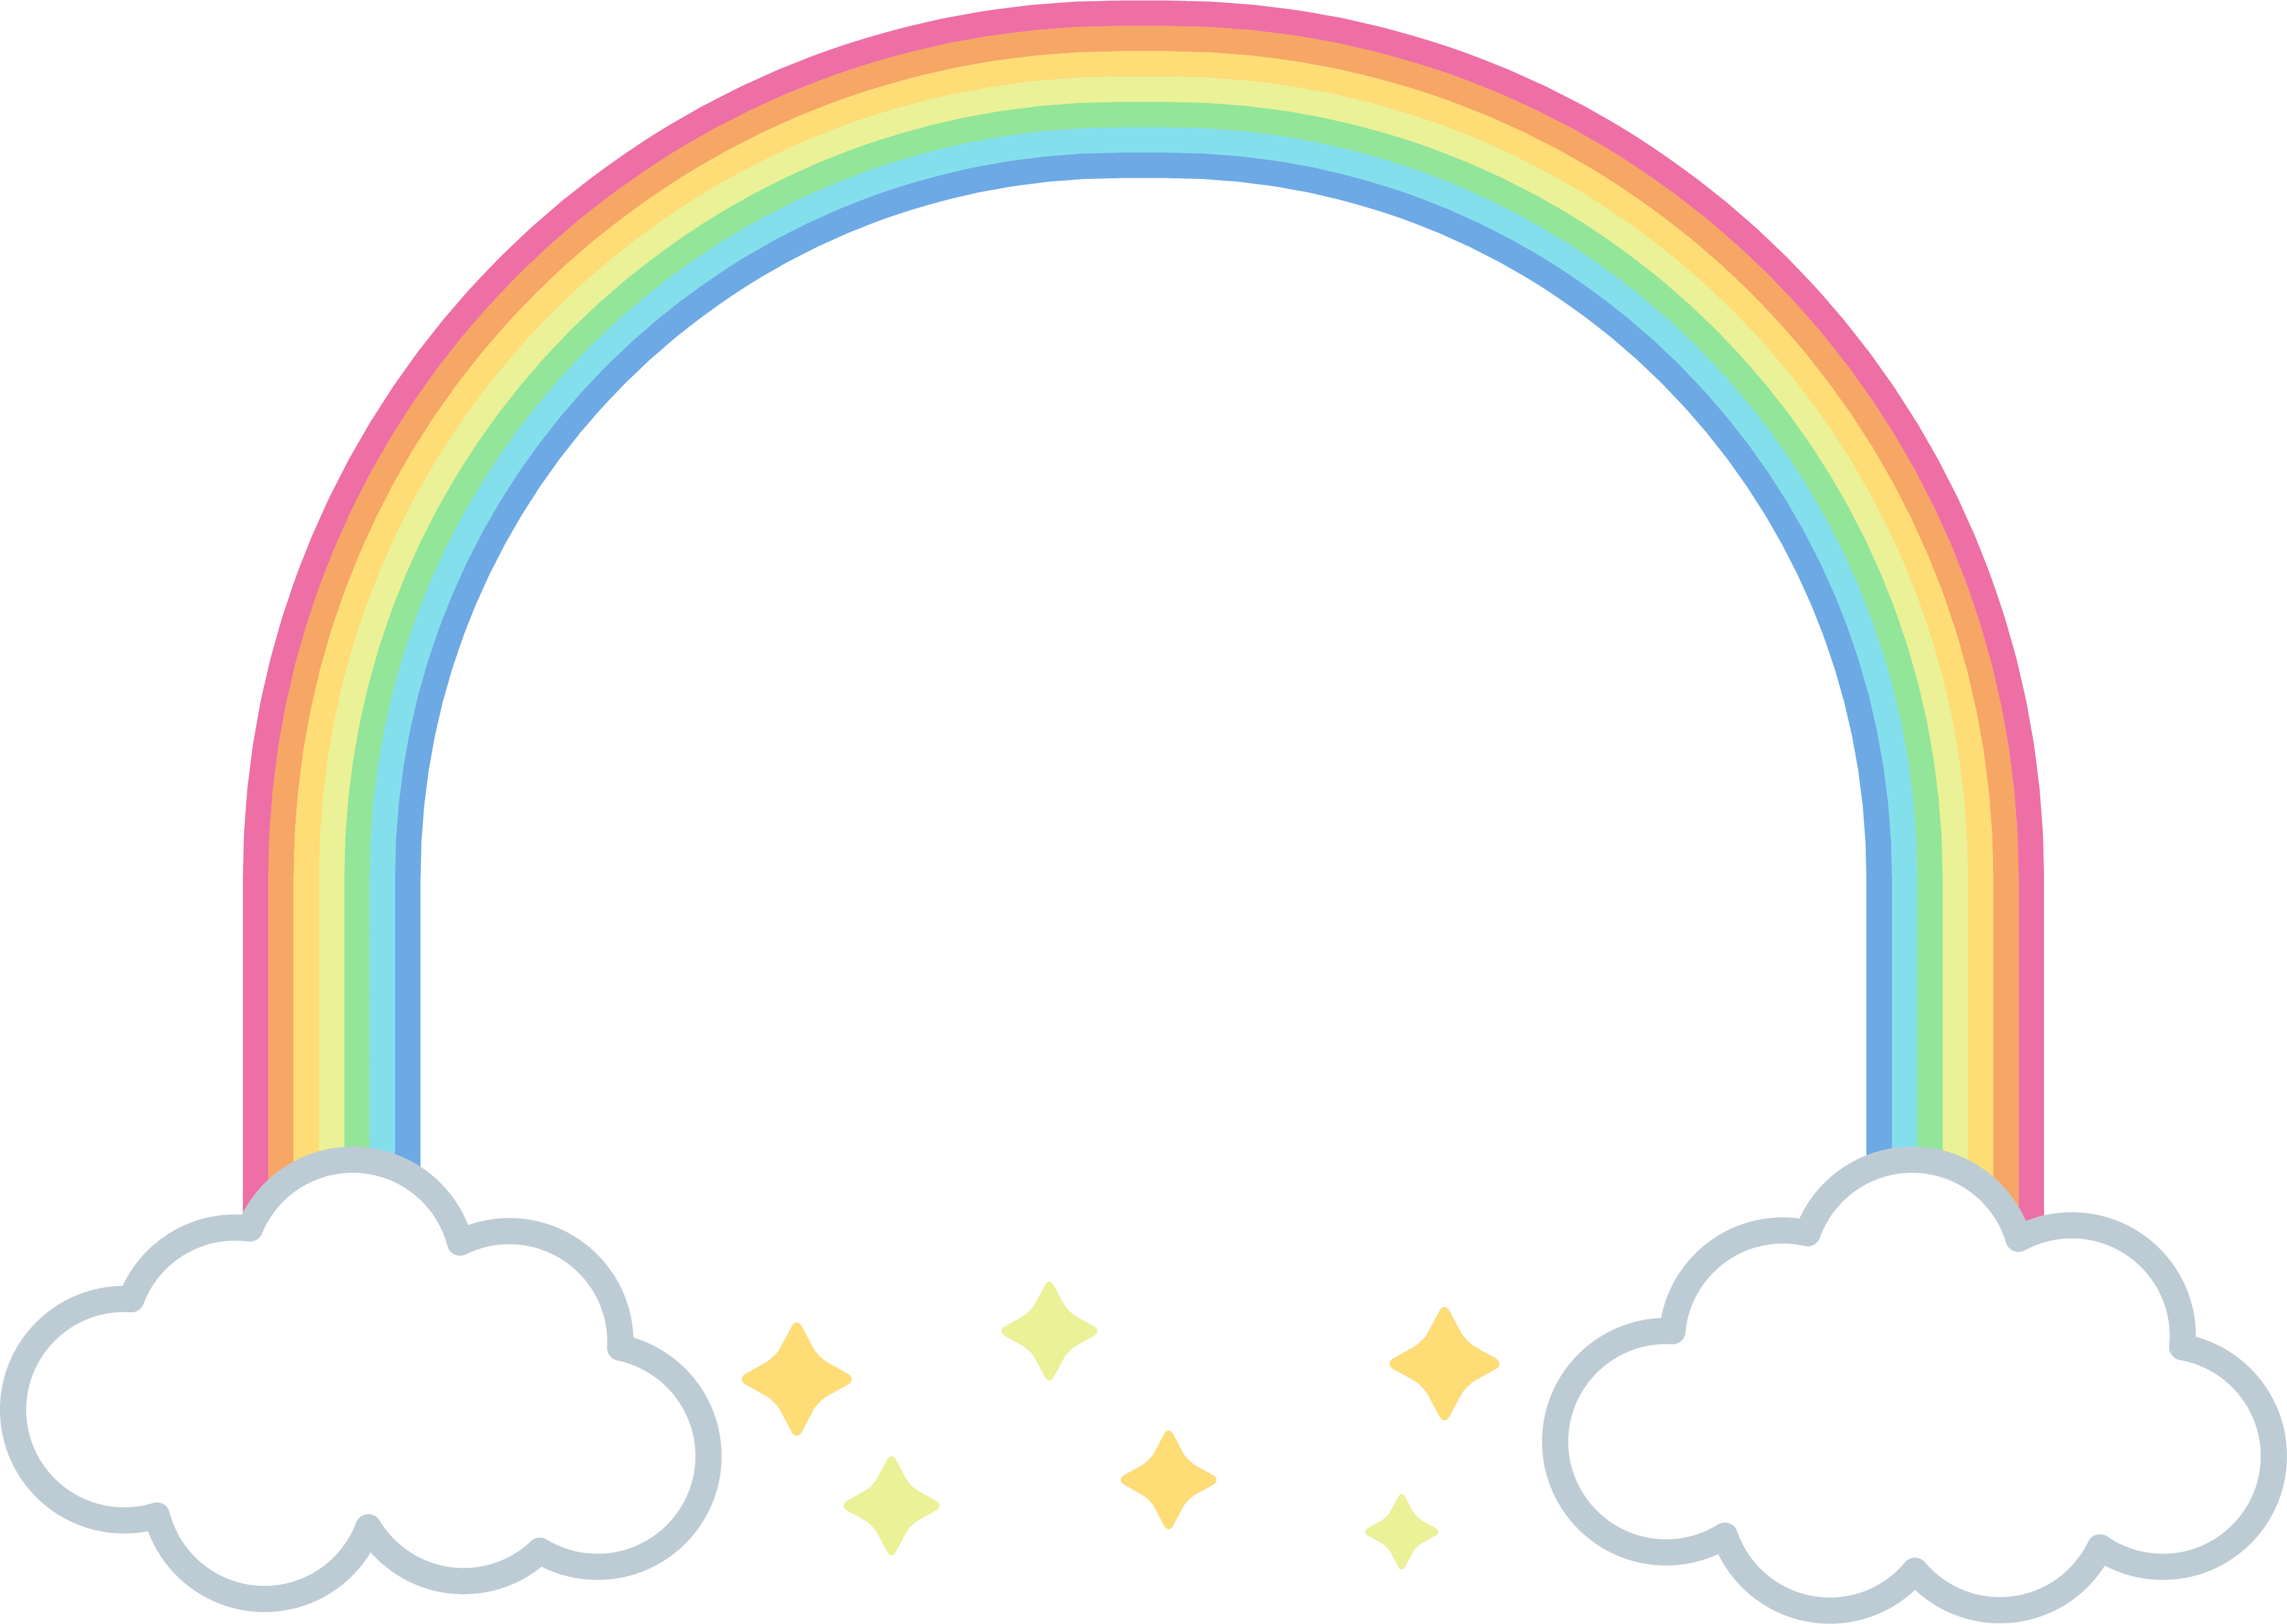 虹のアーチと星のフレーム飾り枠